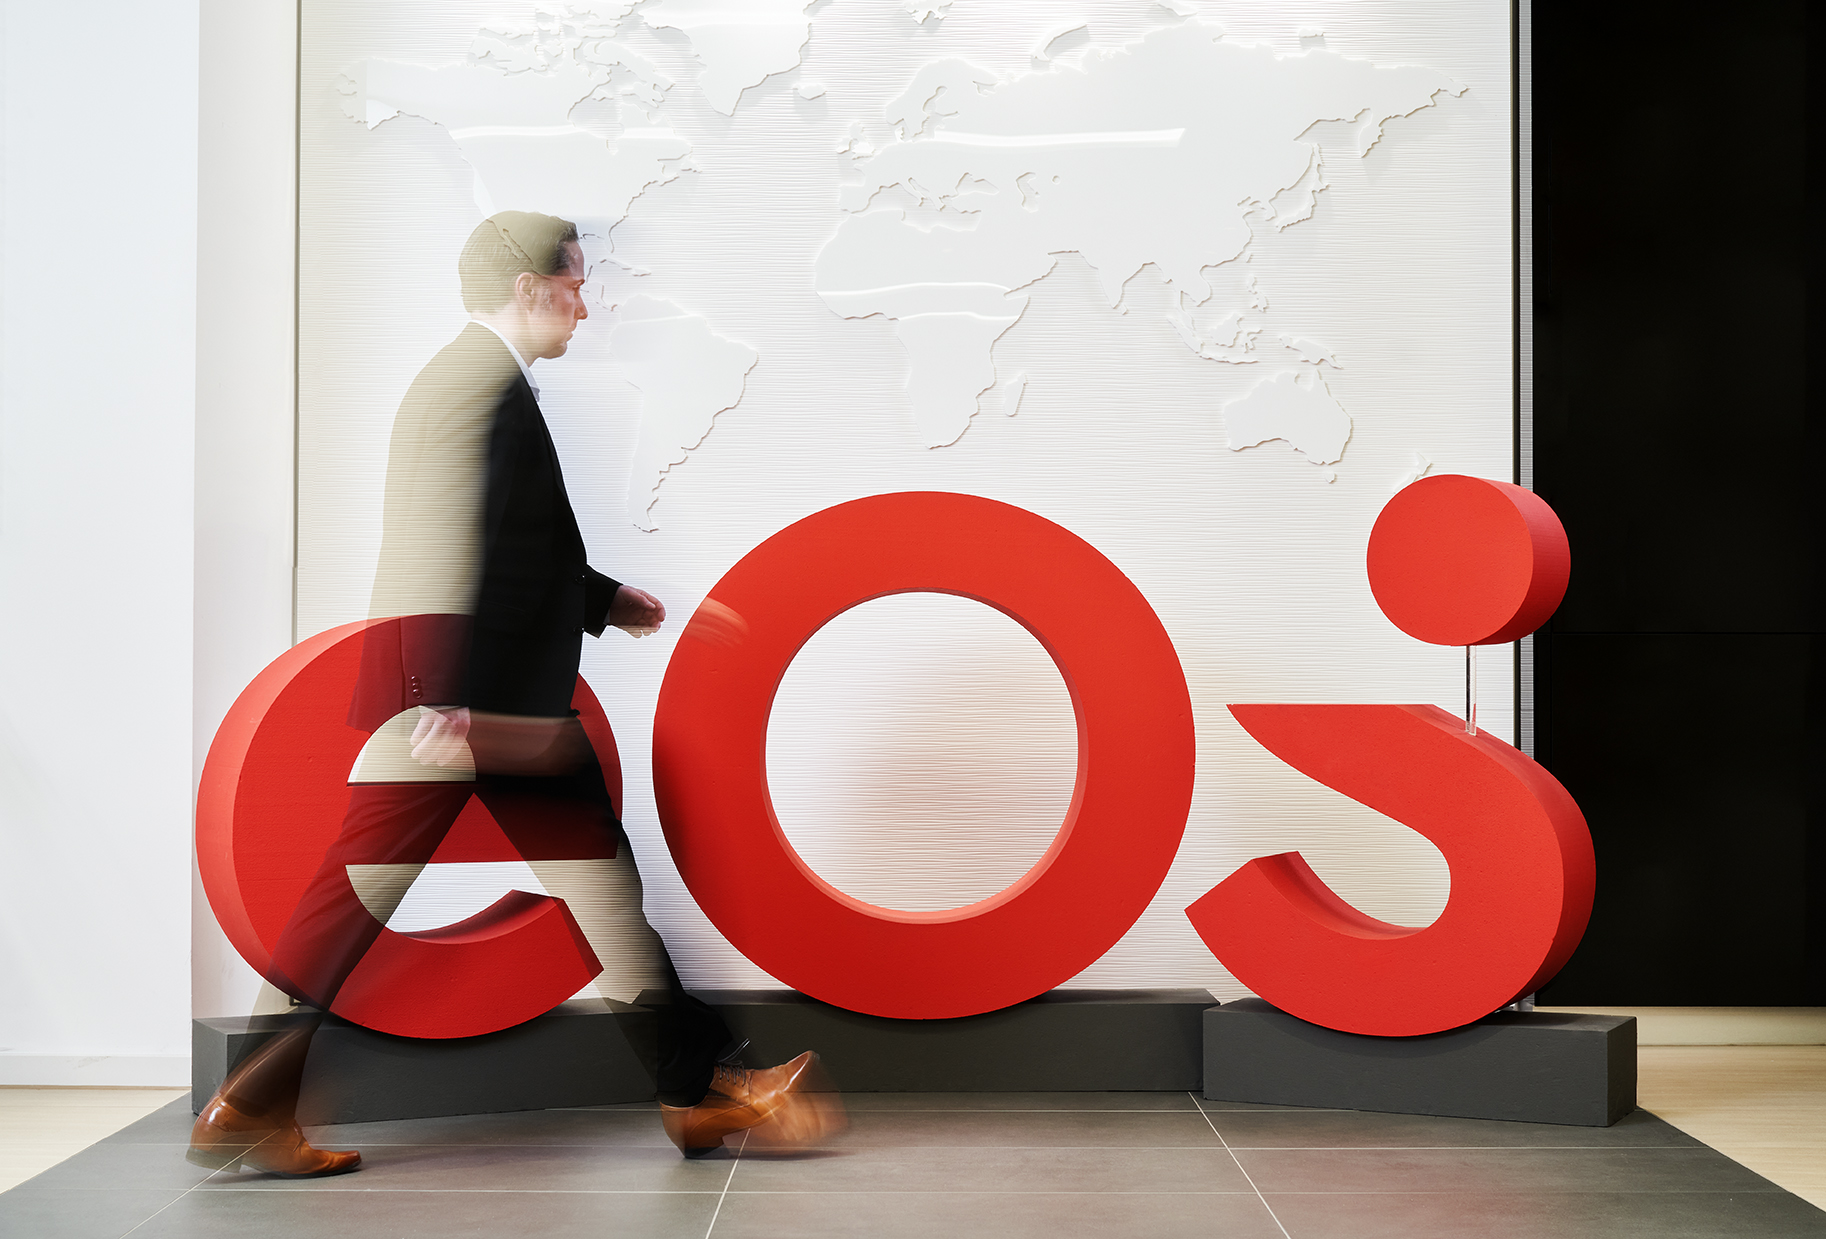 Αυτό είναι το νέο brand της EOS: το νέο λογότυπο κοσμεί τον χώρο υποδοχής των κεντρικών γραφείων της EOS.